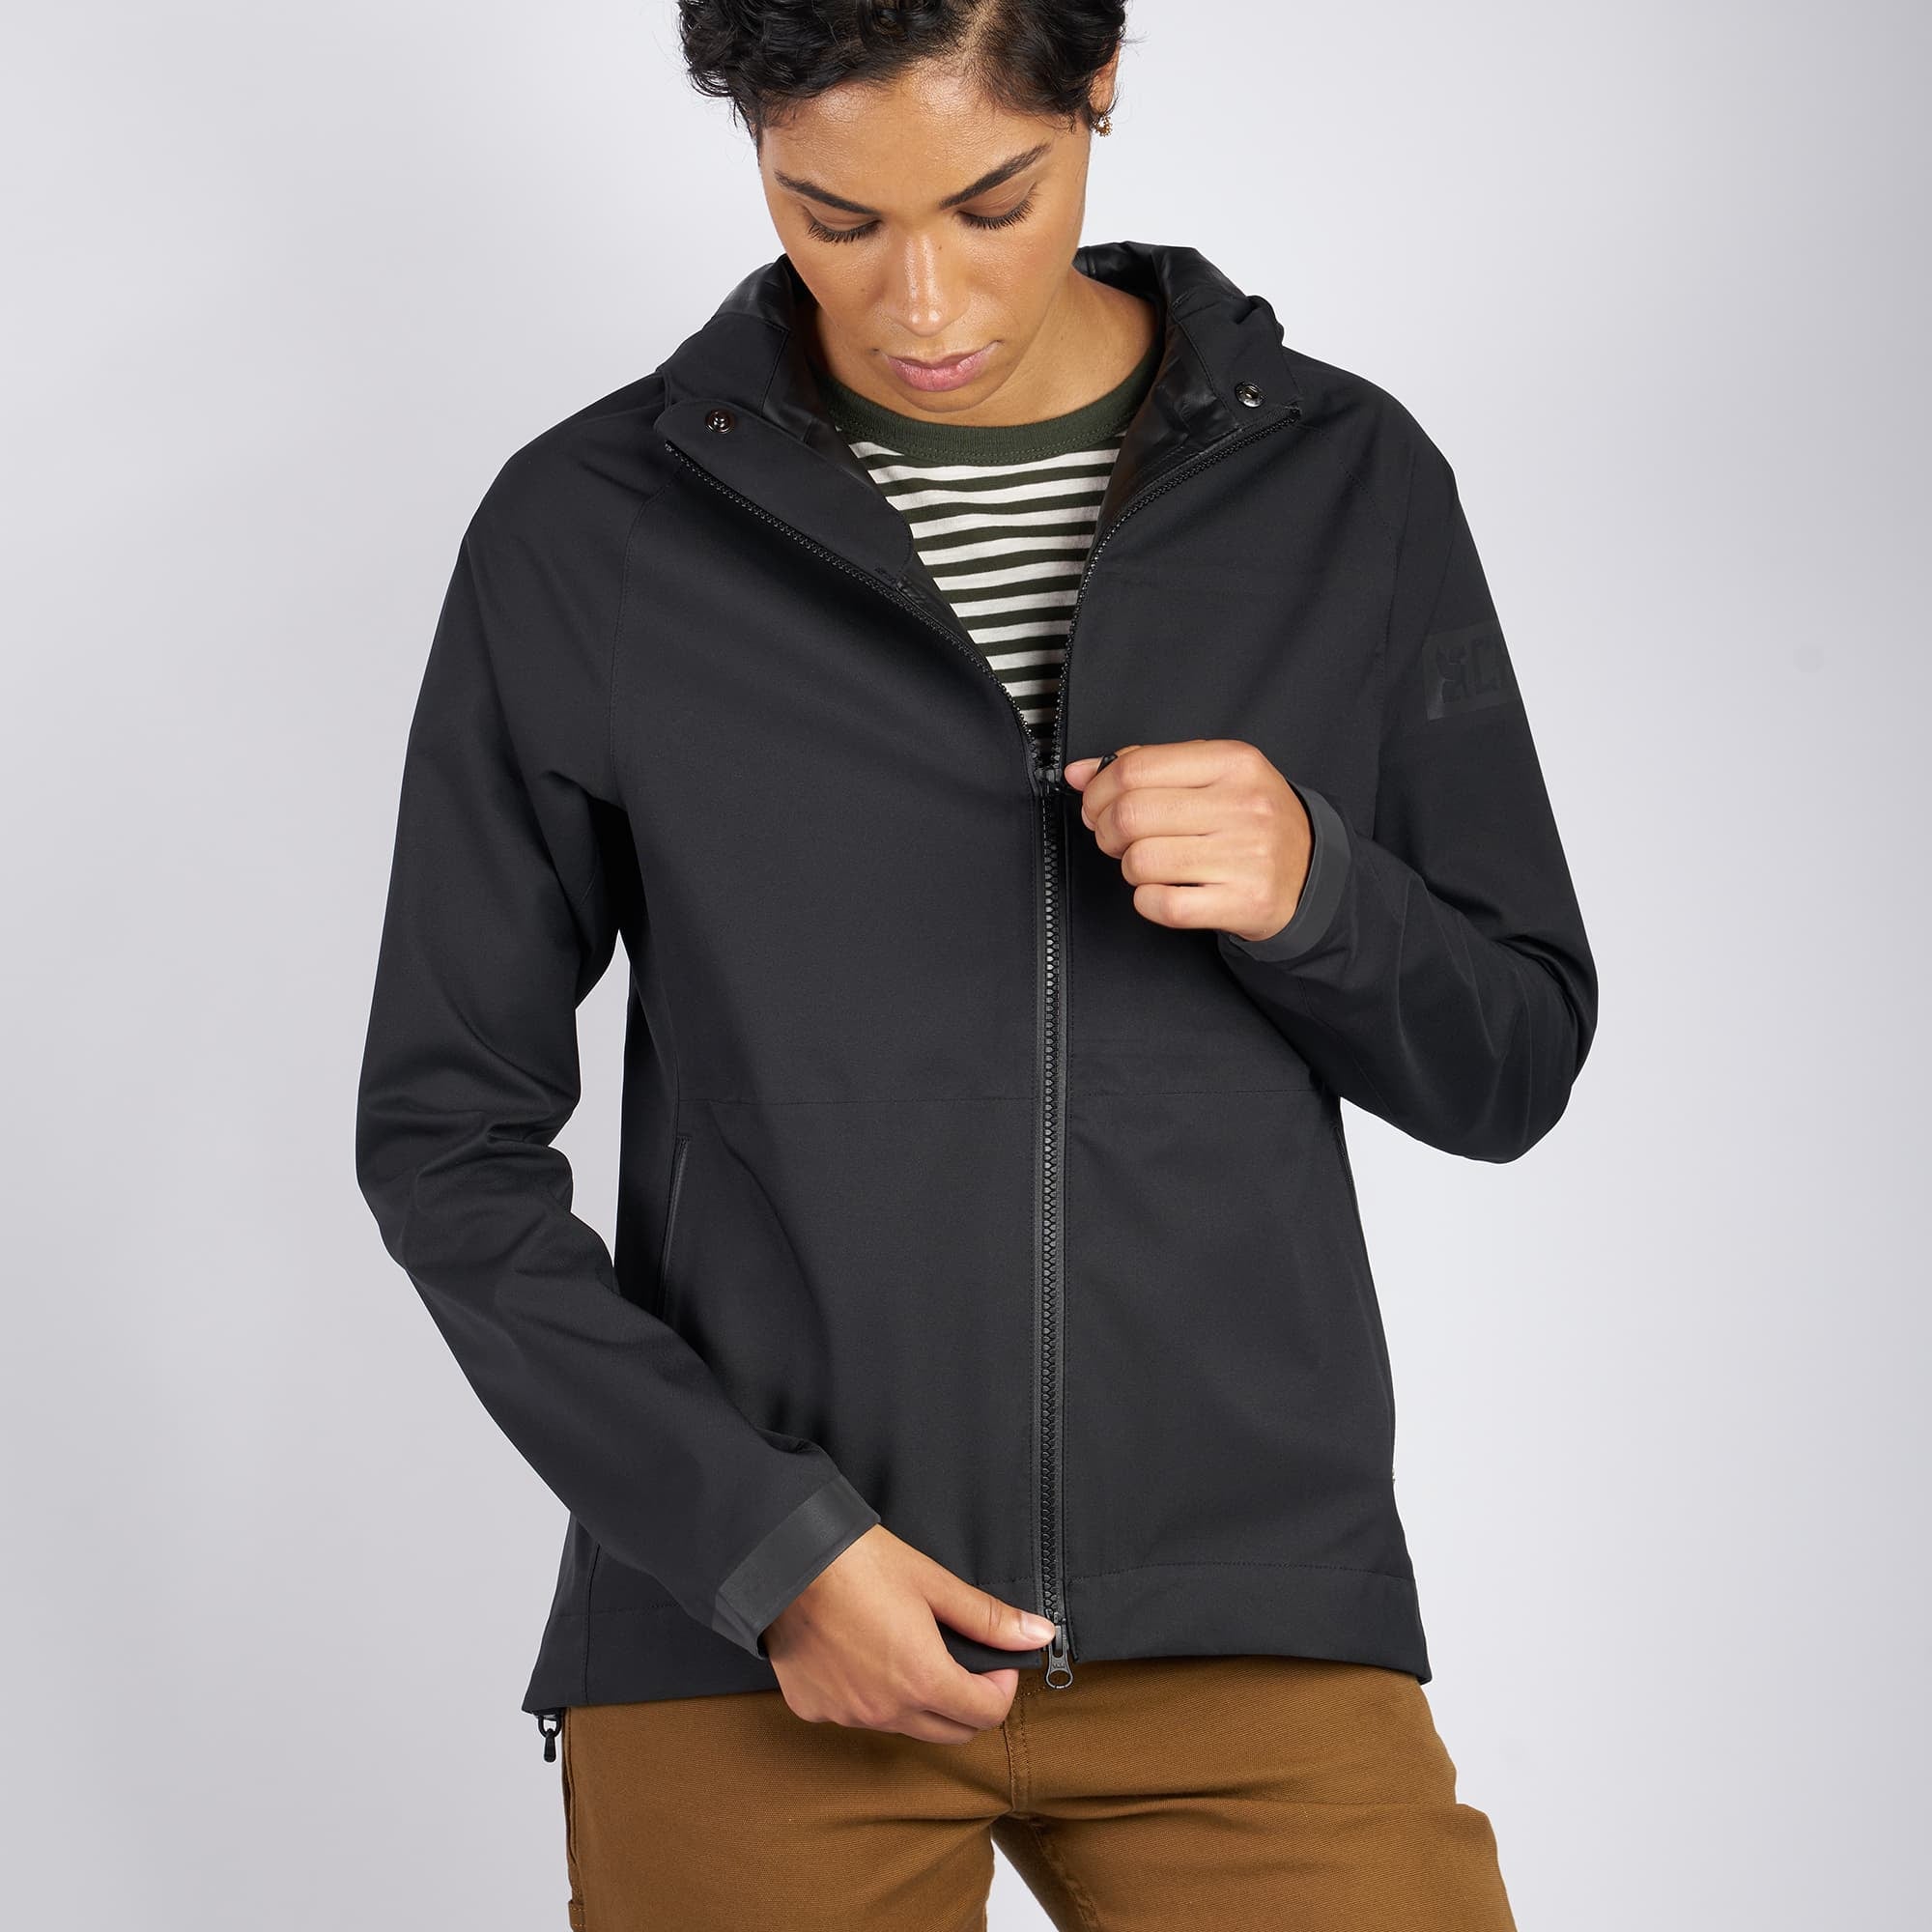 Women's waterproof jacket in black worn by a woman zipper highlight